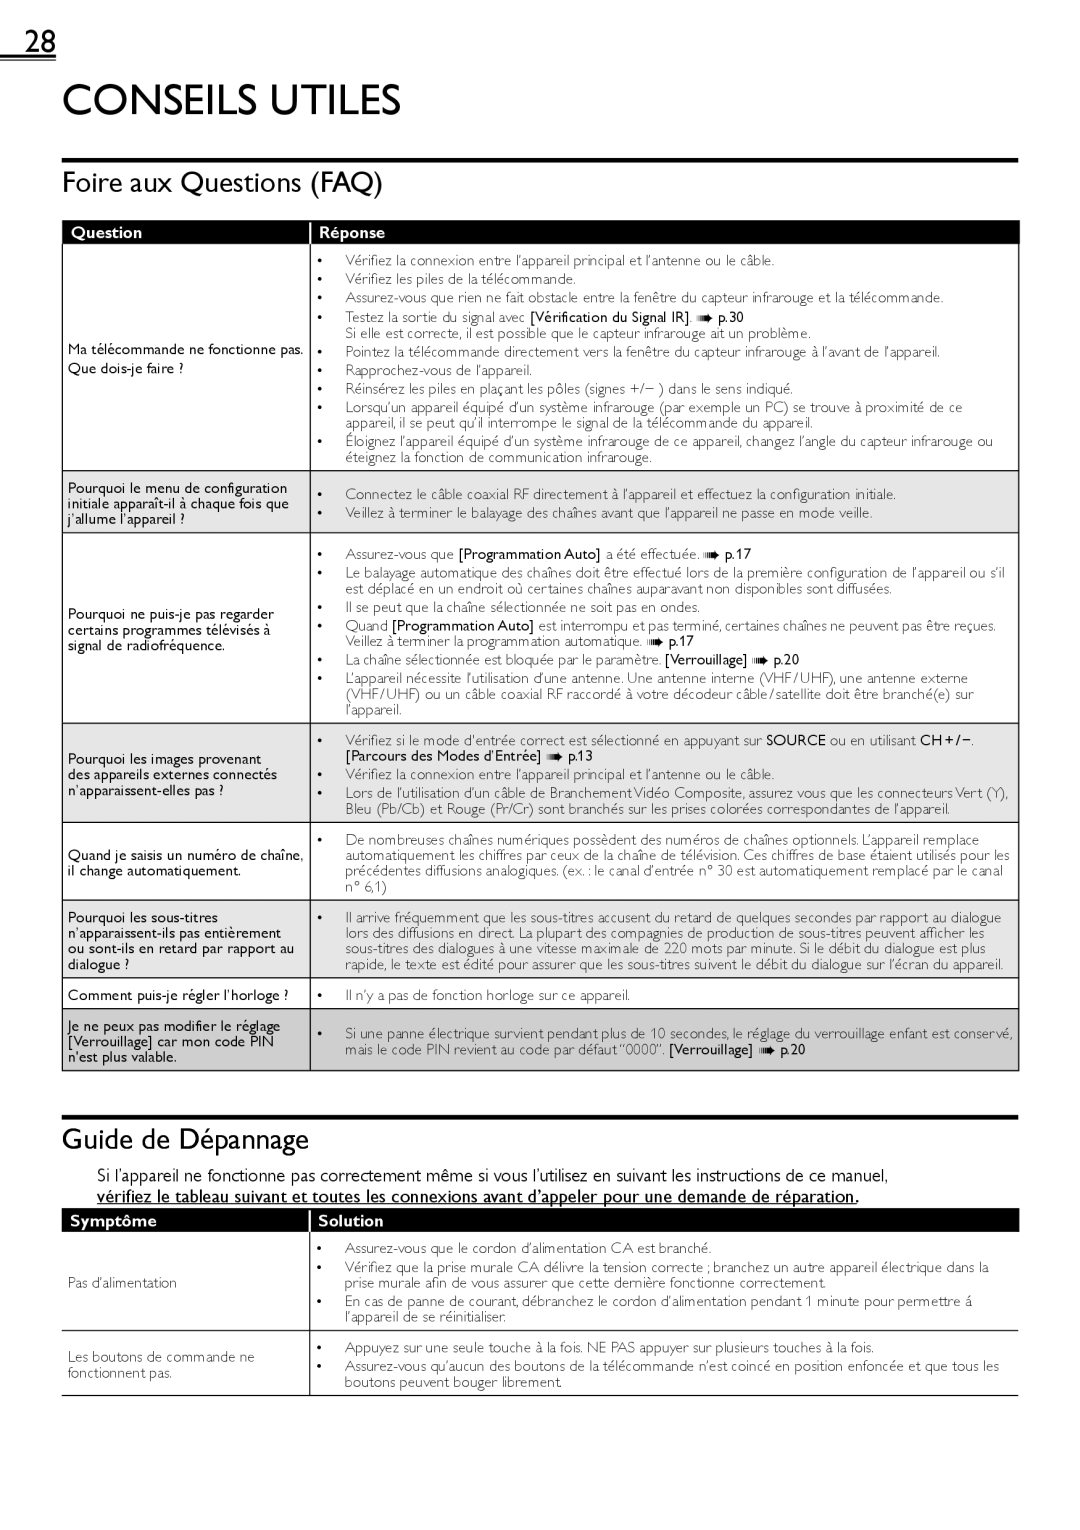 Sylvania LC320SS2 owner manual Conseils Utiles, Foire aux Questions FAQ, Guide de Dépannage, Réponse, Symptôme, Solution 